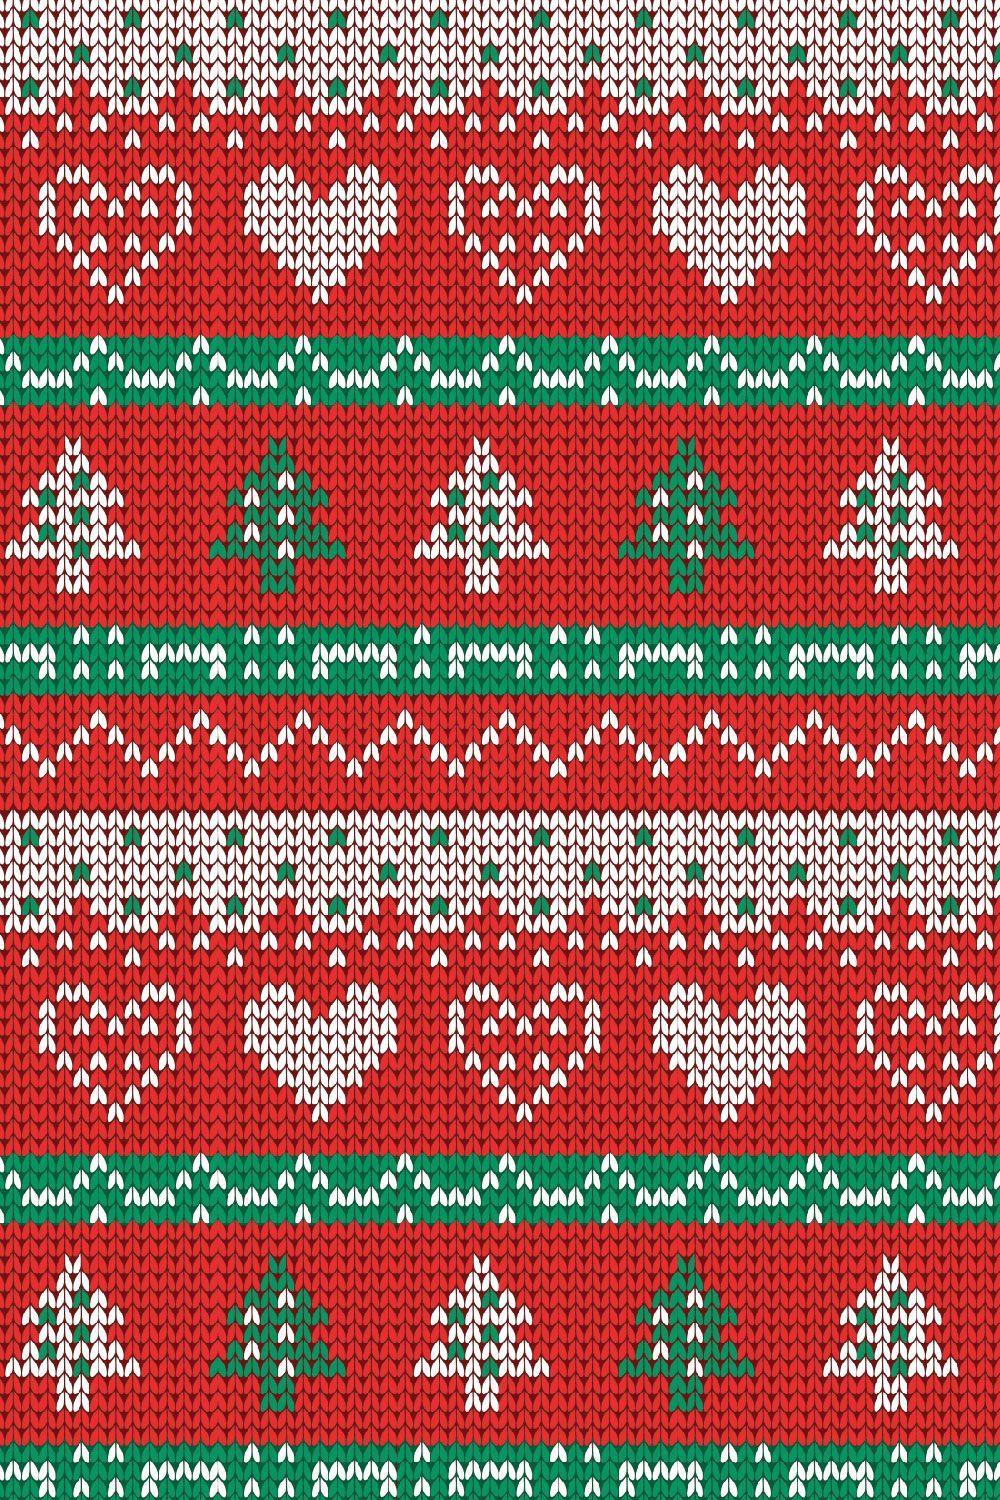 Bạn muốn tìm một hình nền áo len Giáng sinh đẹp và miễn phí? Chúng tôi có tất cả những gì bạn cần. Christmas sweater wallpapers - Top free Christmas sweater sẽ giúp cho không gian Giáng sinh của bạn thêm ấm áp và đầy đủ hơn. Với nhiều mẫu mã khác nhau, bạn sẽ tìm thấy chiếc áo len phù hợp với phong cách và sở thích của bạn.